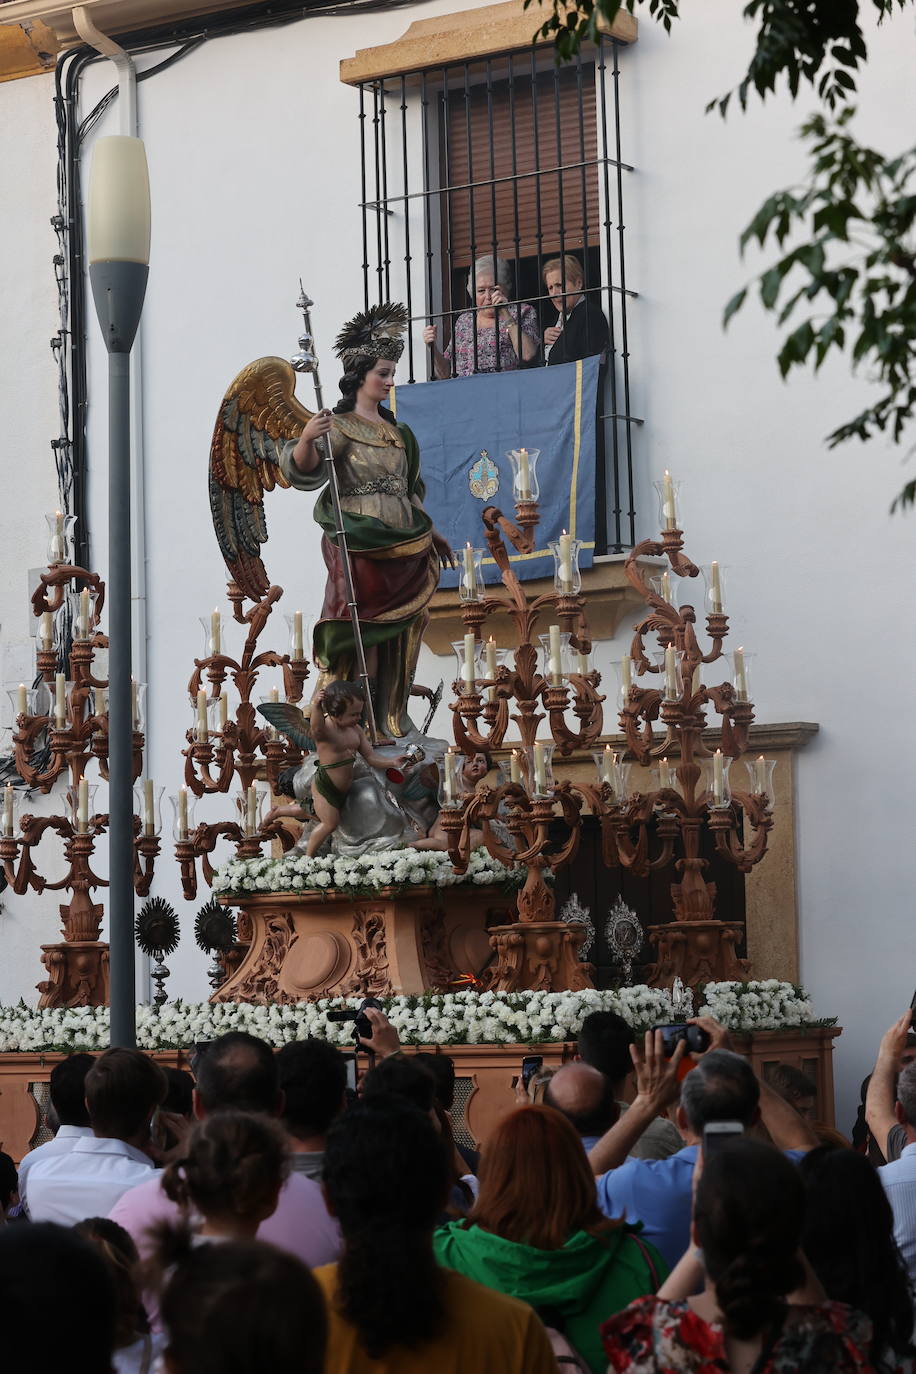 La procesión de San Rafael el día del Juramento en Córdoba, en imágenes